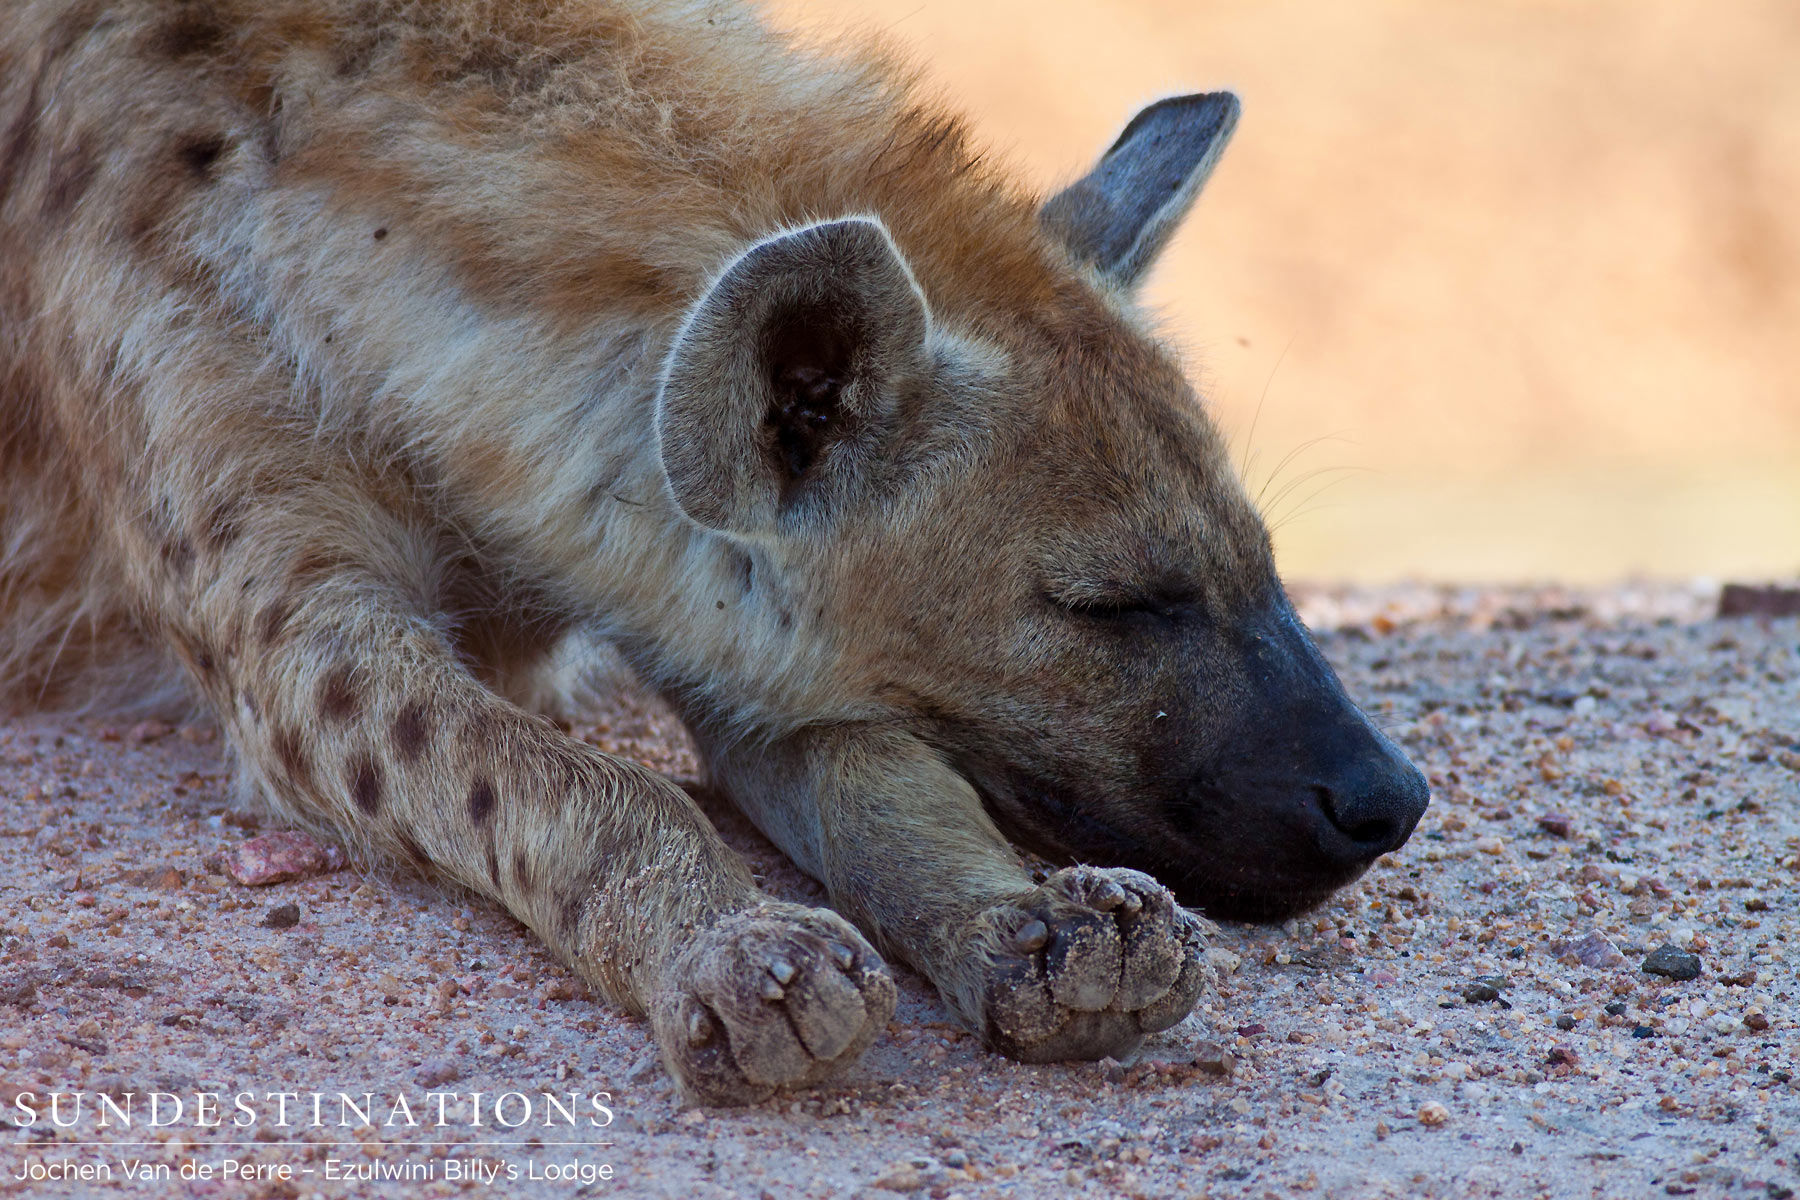 Sleeping hyena in Balule